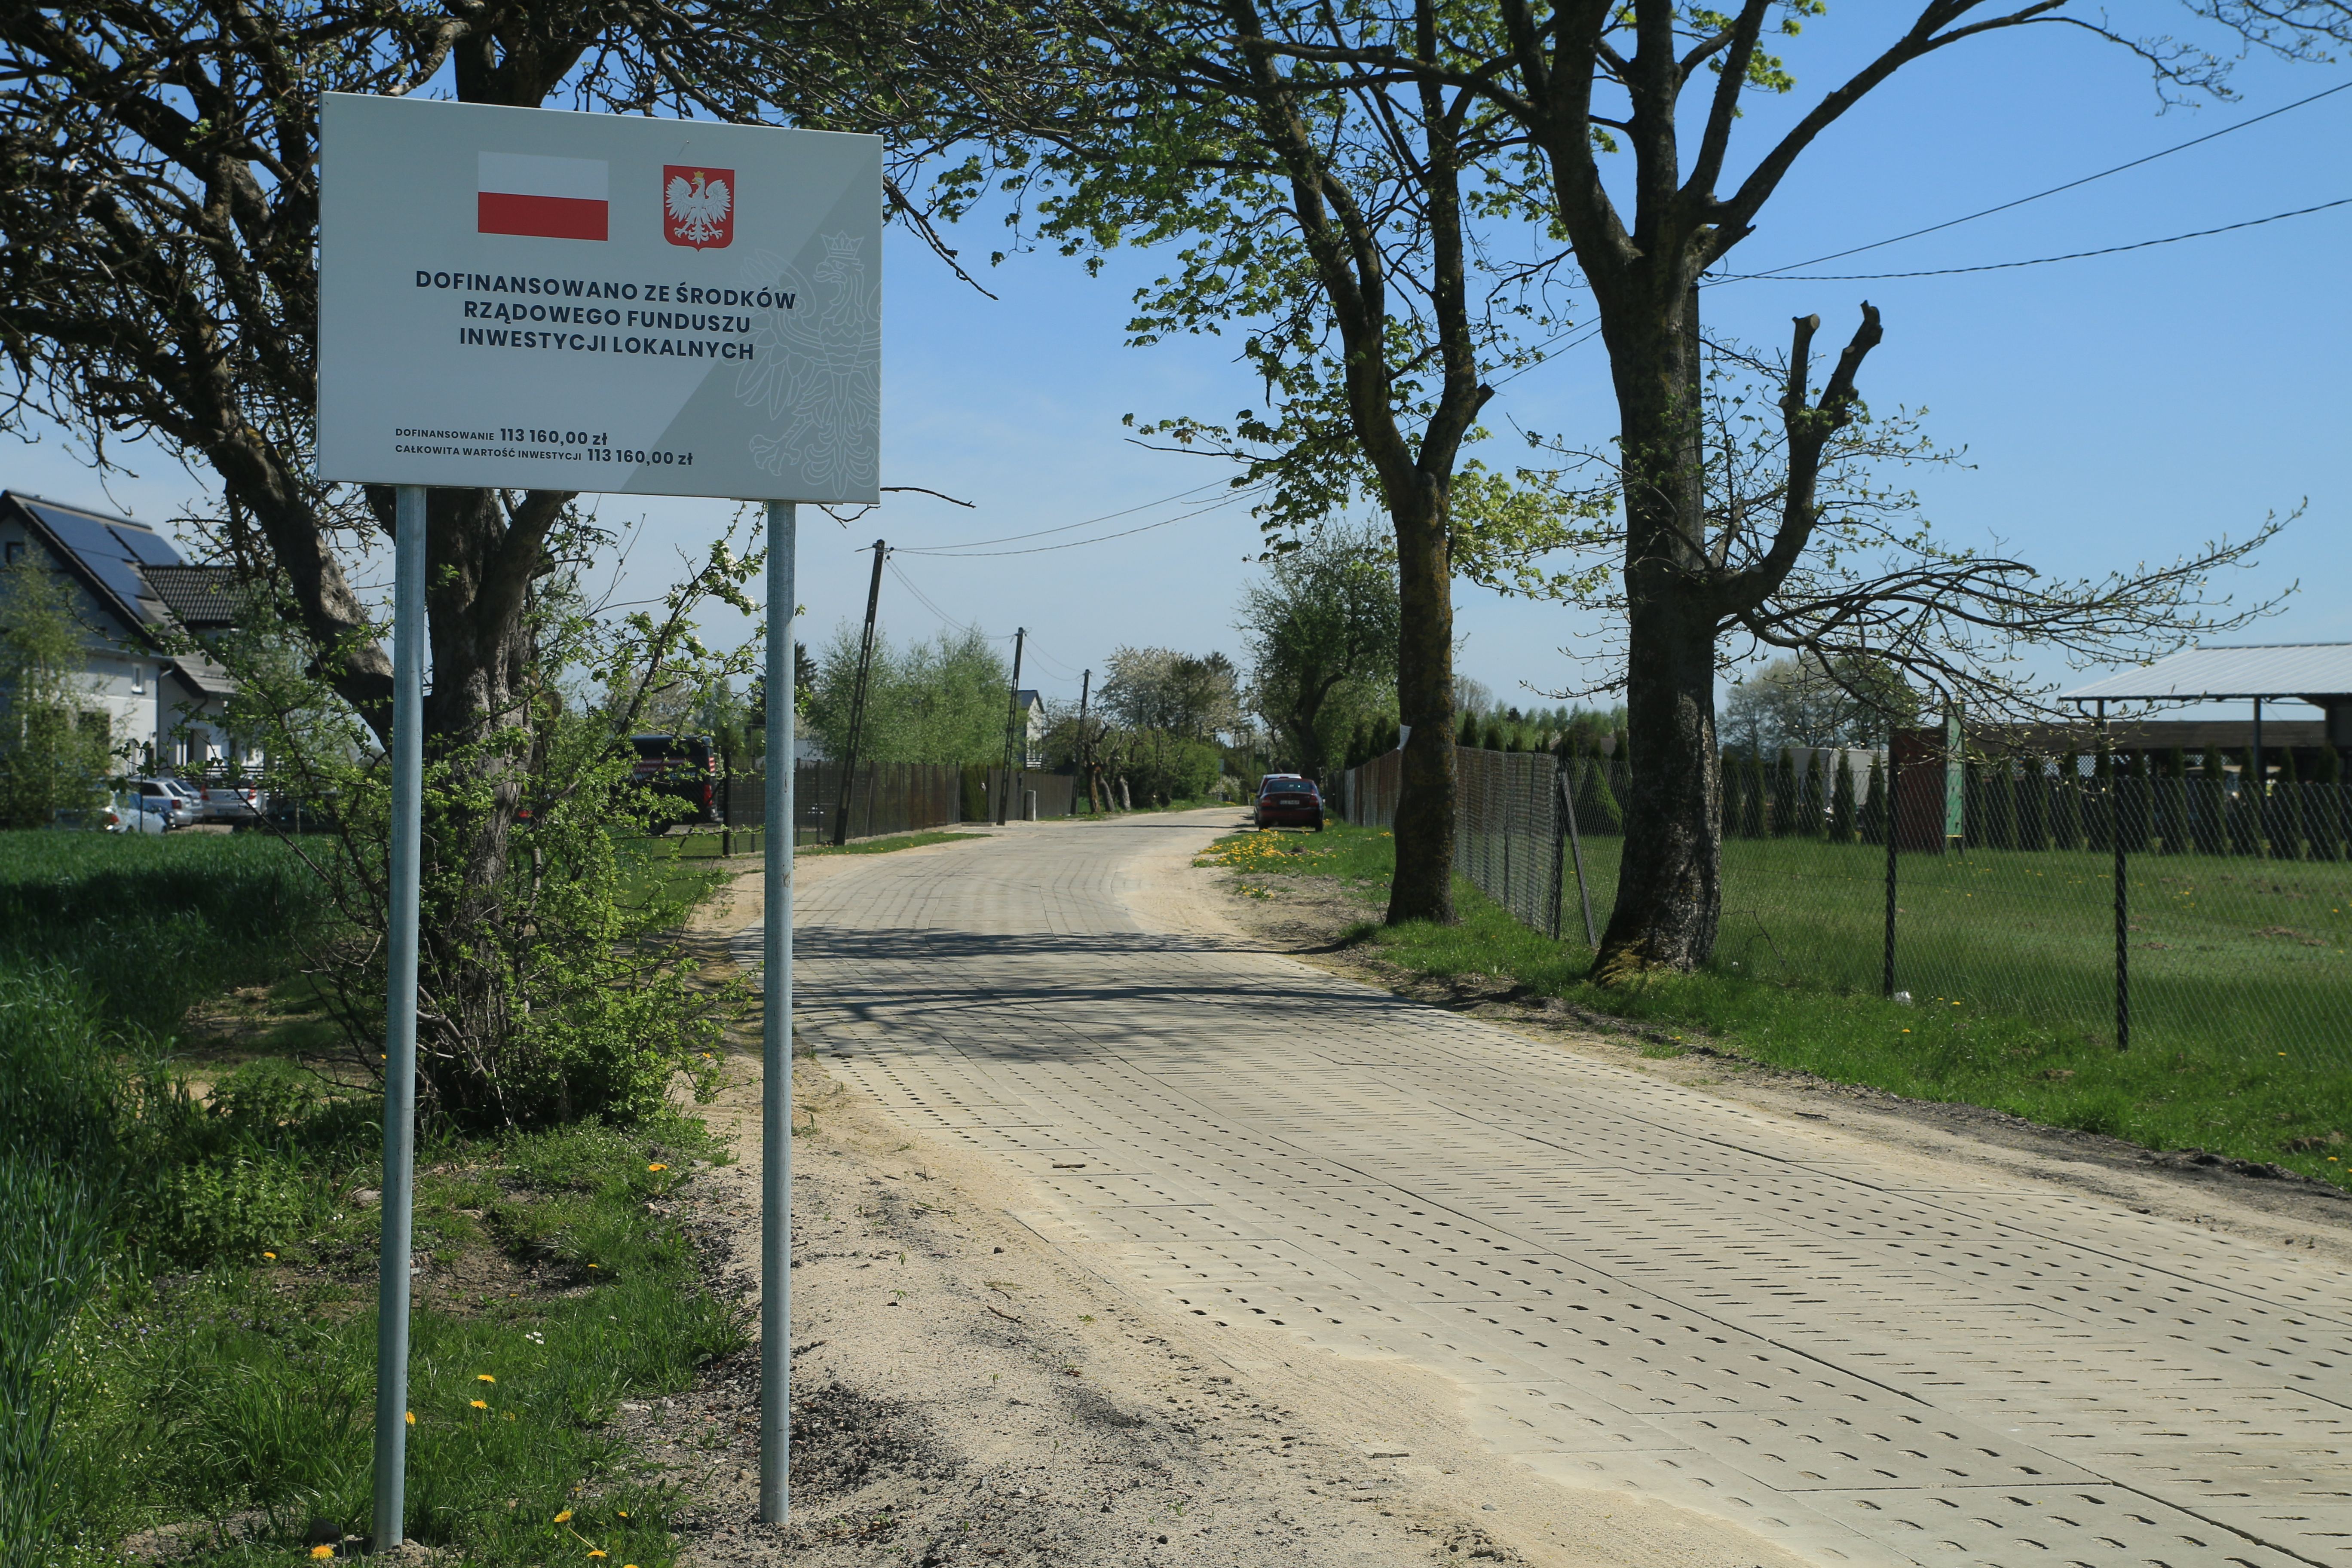 Przebudowana droga w Krępie Kaszubskiej. Płyty typu YOMB. Na pierwszym planie tablica informacyjna o dofinansowaniu z RFIL